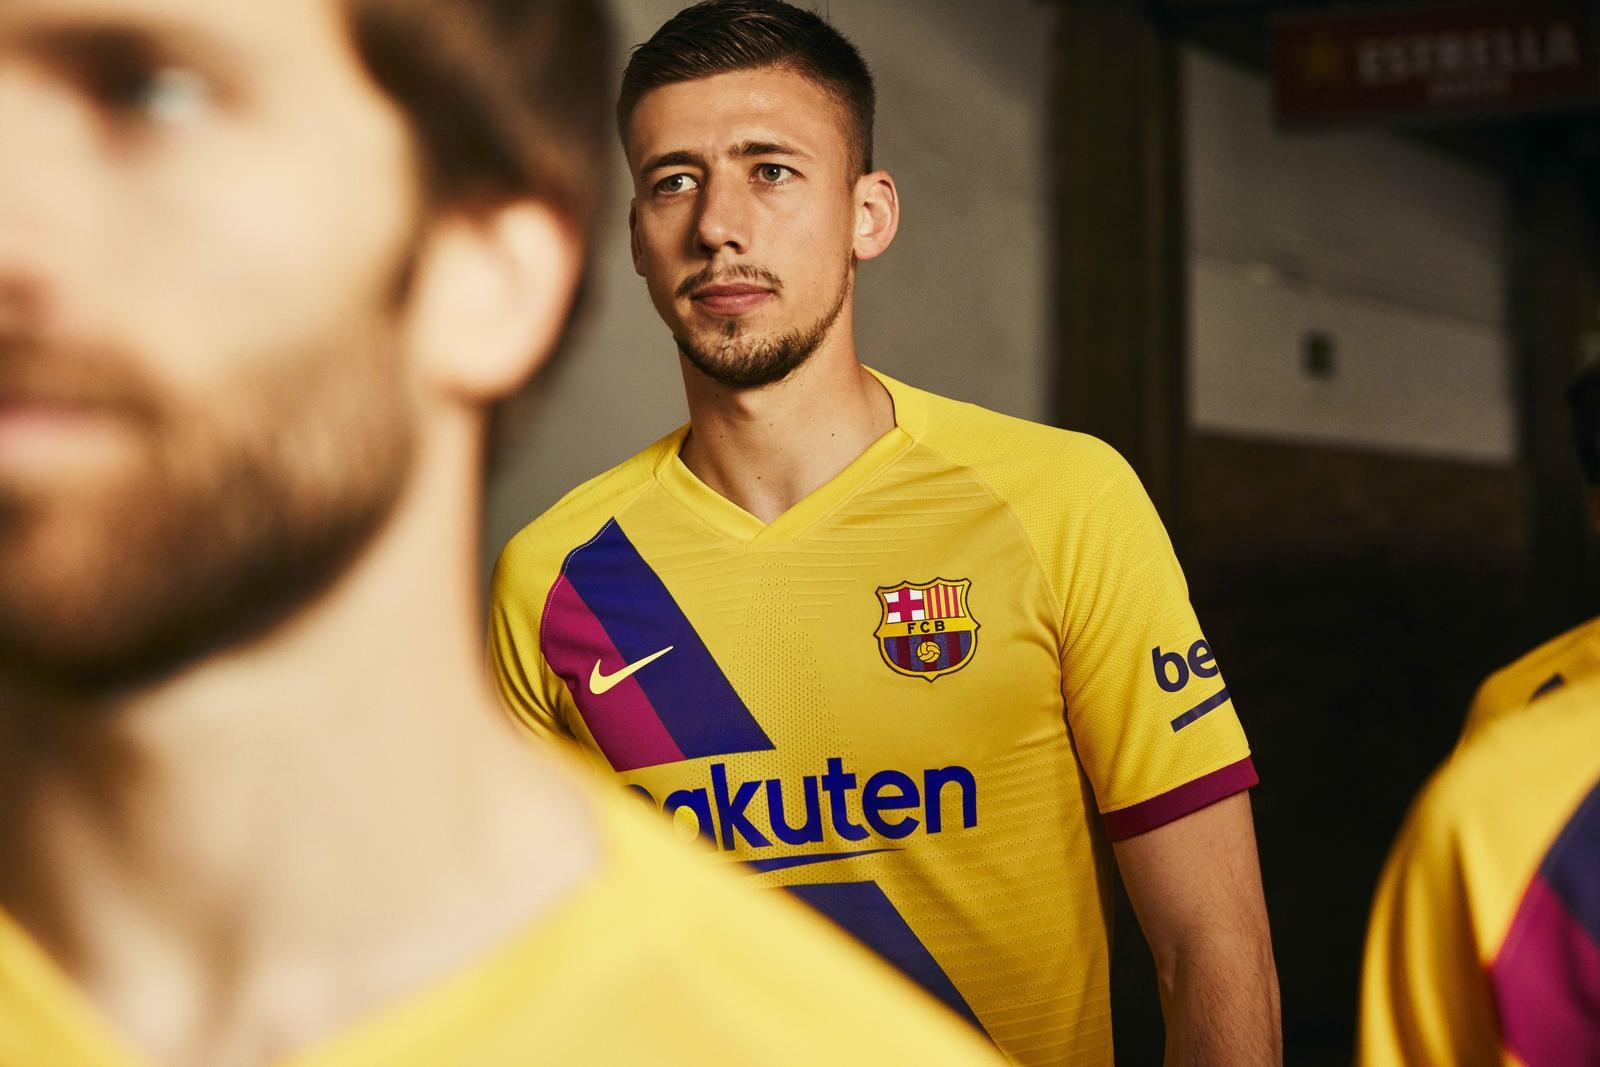 Lookbook du maillot extérieur du FC Barcelone